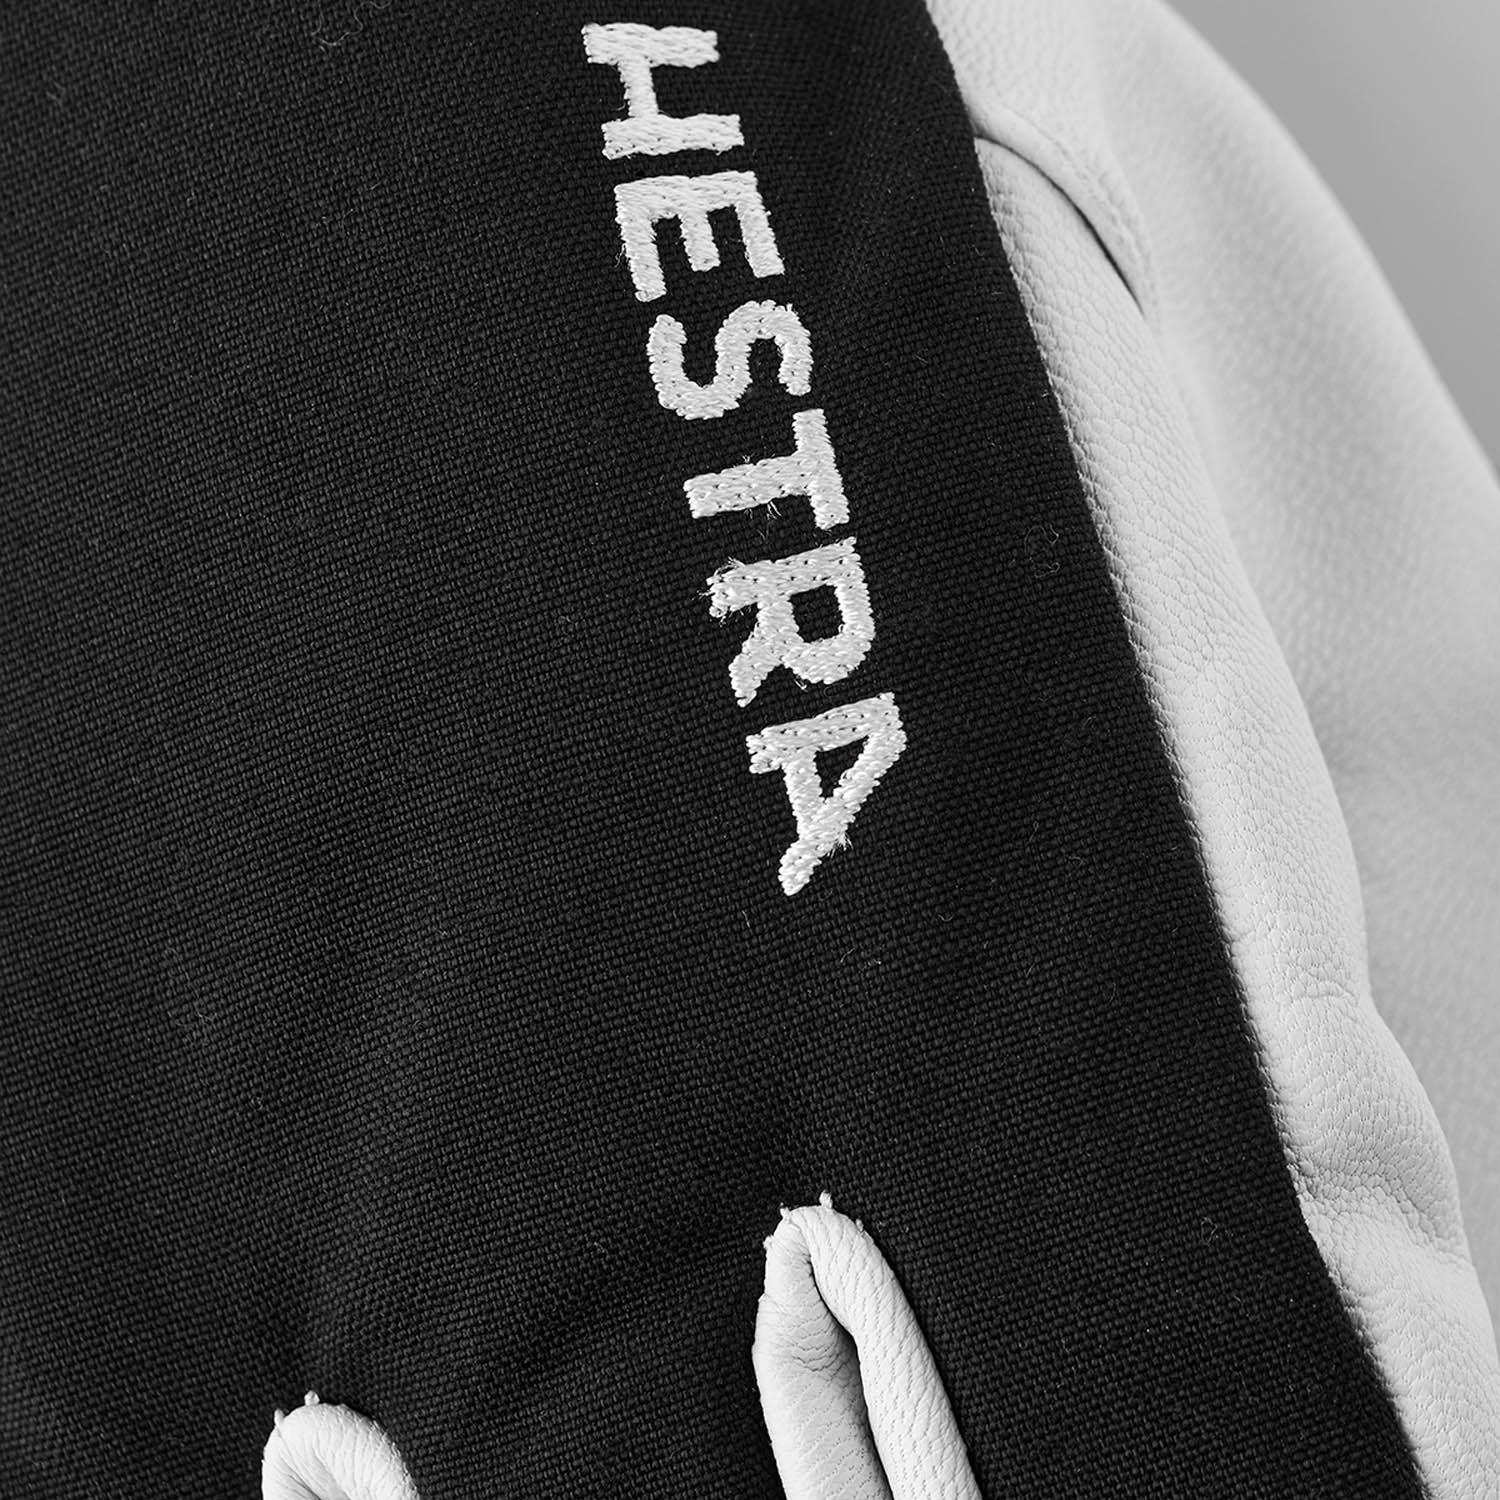 Hestra Army Leather Heli Ski Gloves Black 2021